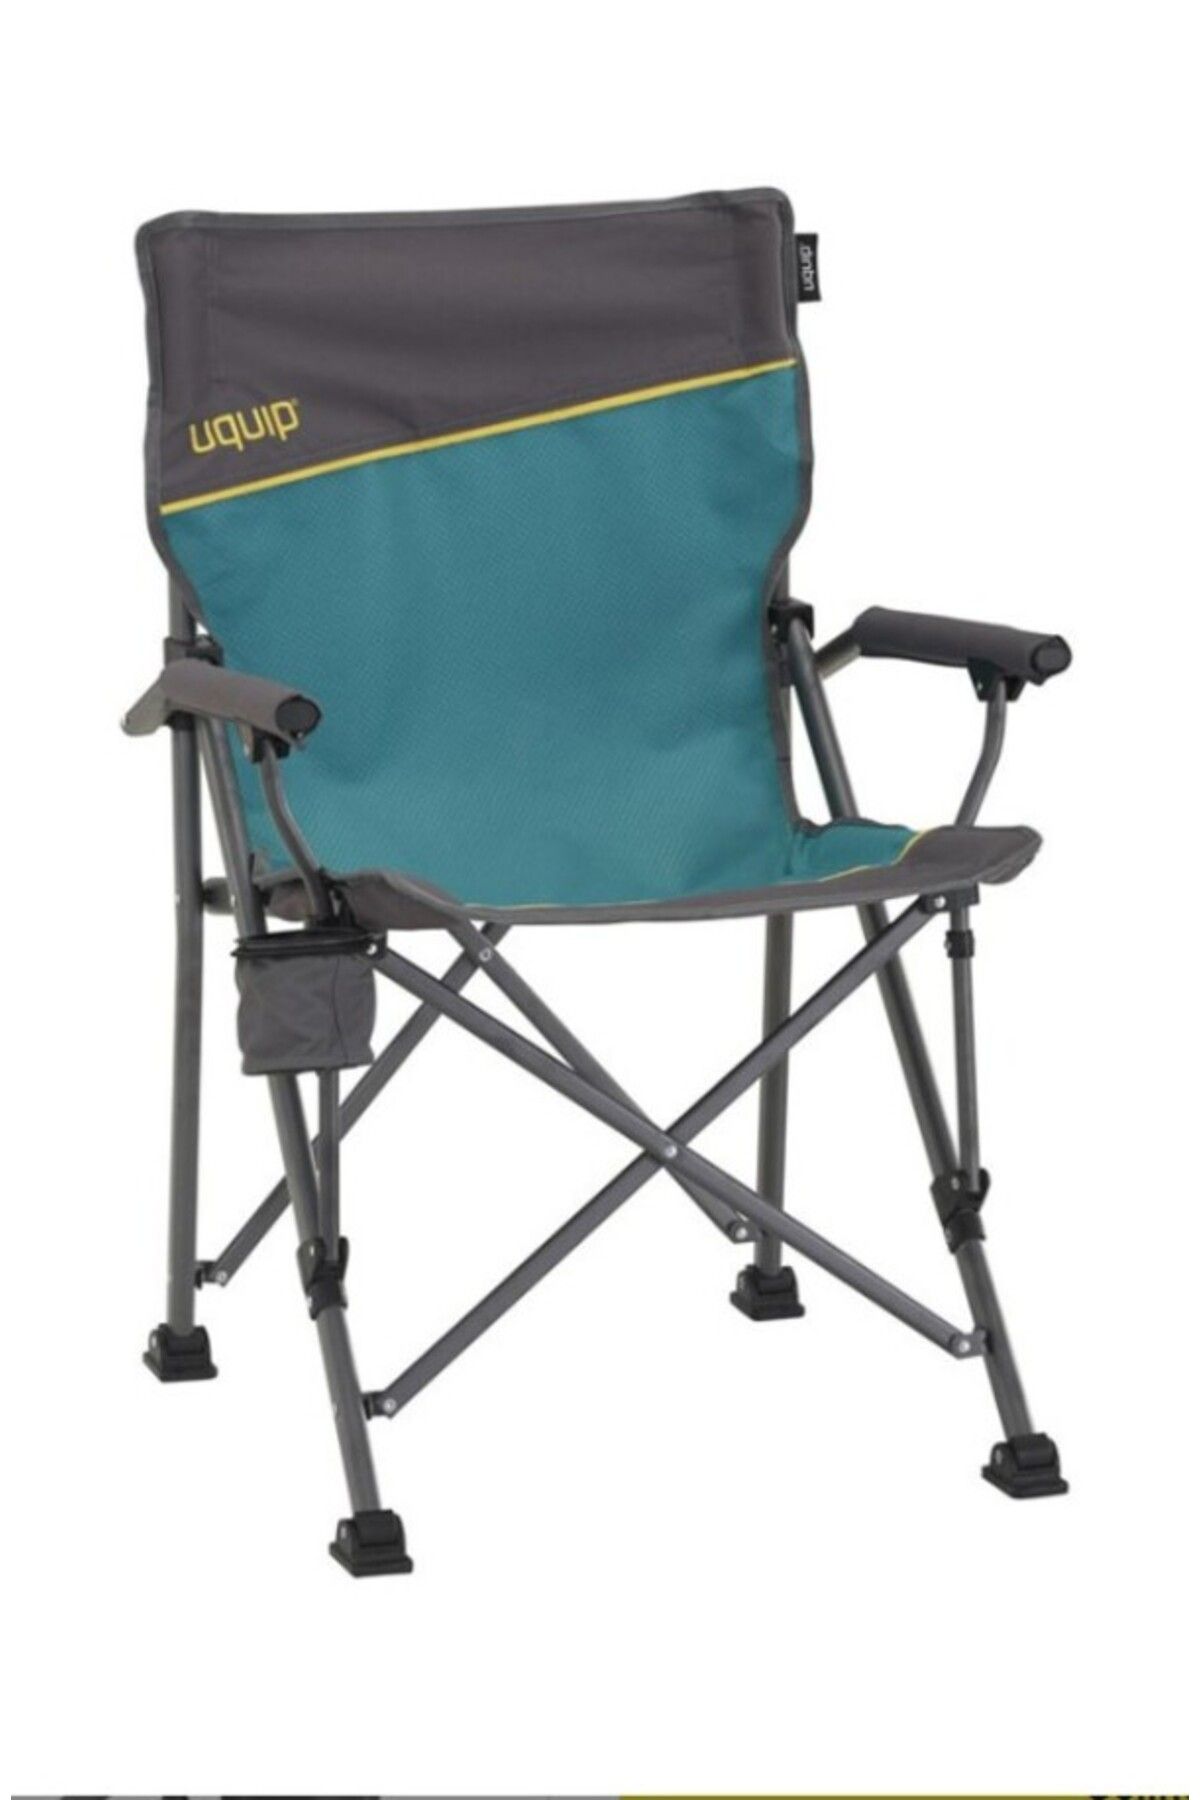 Uquip Roxy Yüksek Konforlu & Takviyeli Katlanır Kamp Sandalyesi